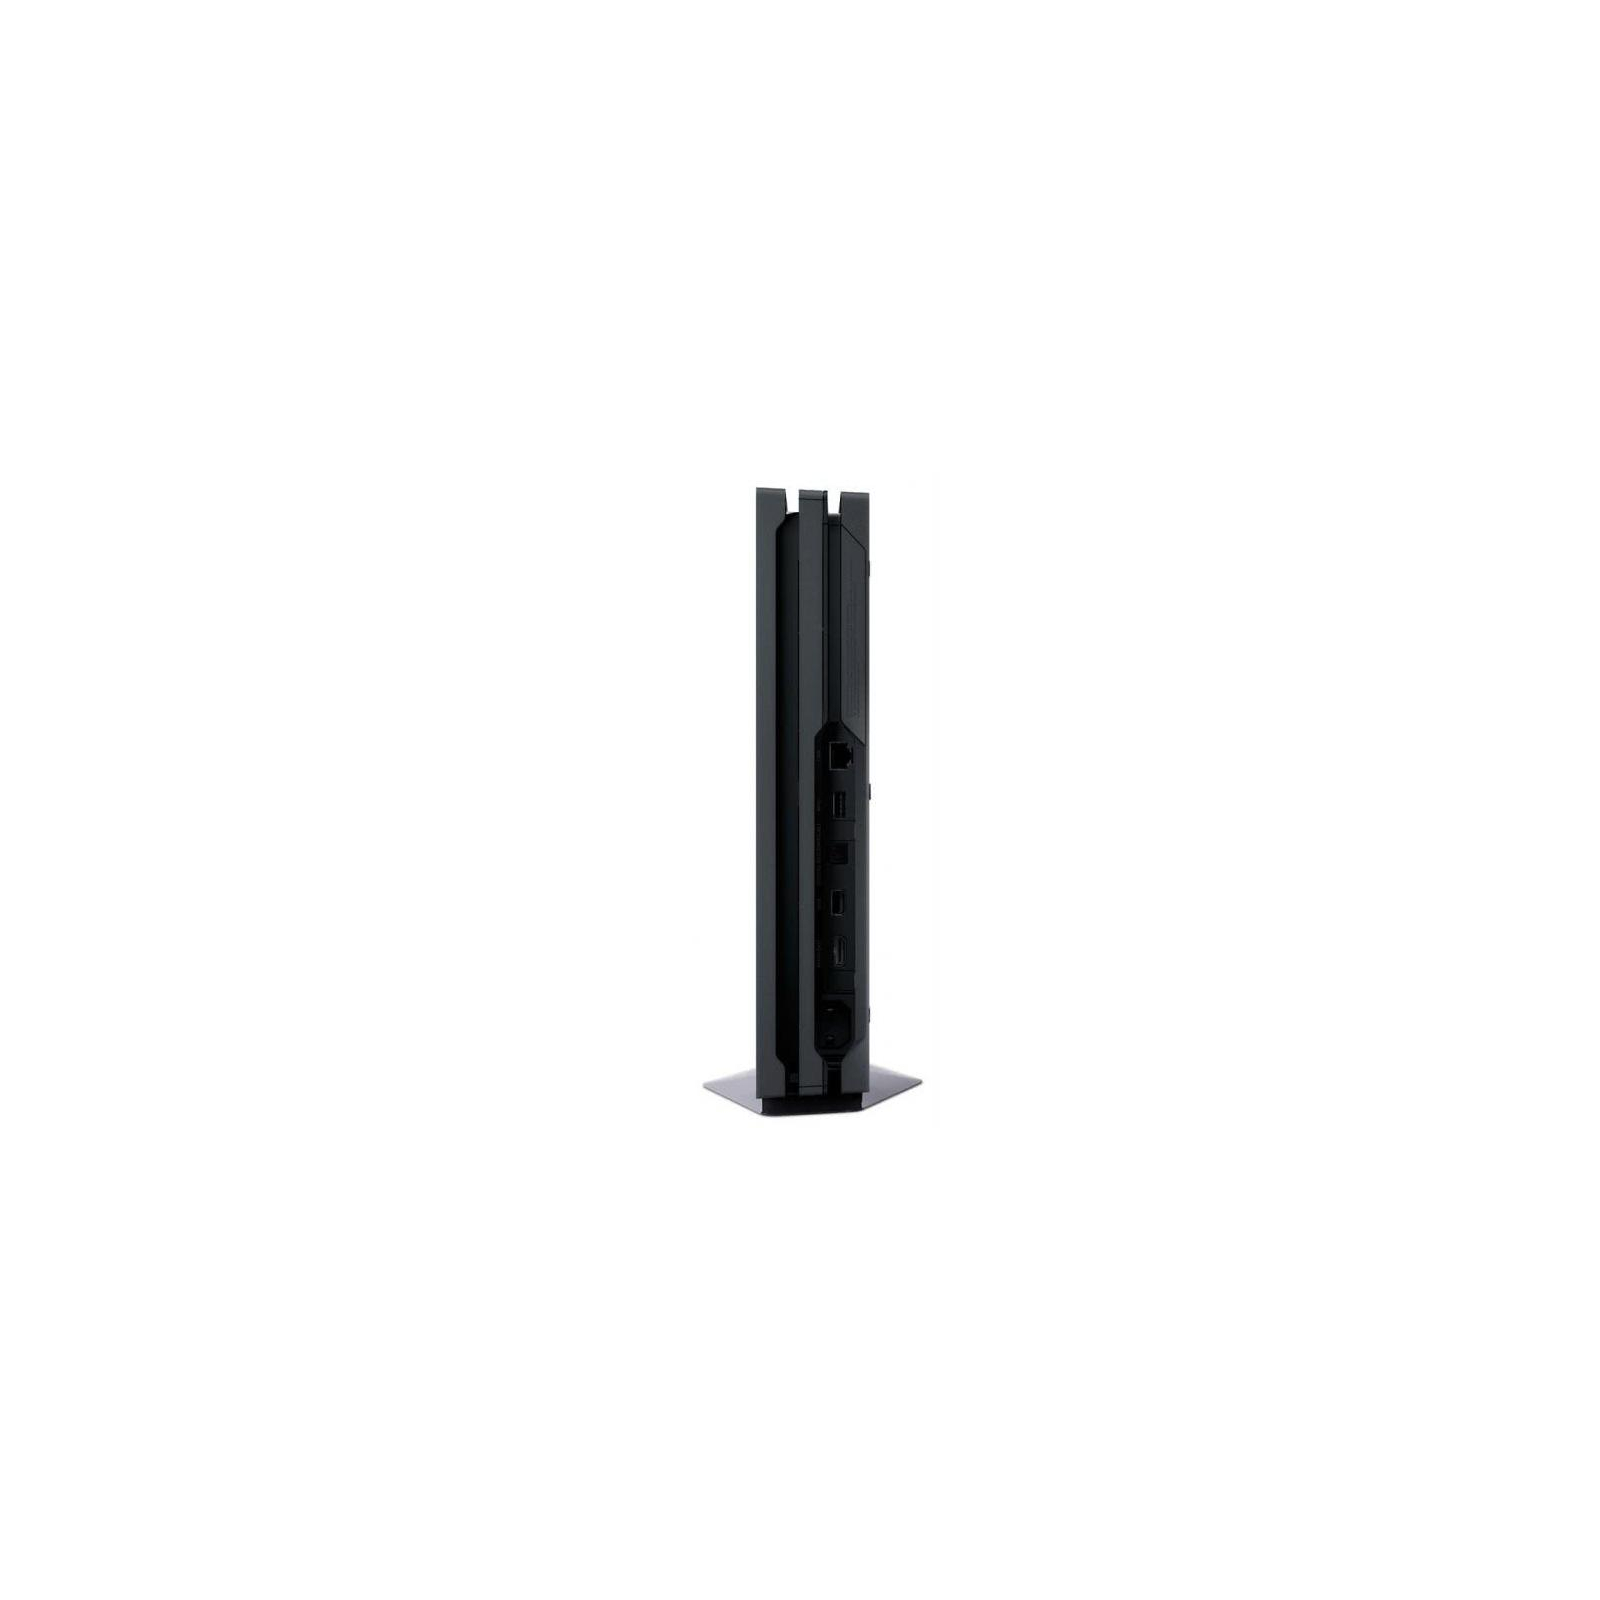 Игровая консоль Sony PlayStation 4 Pro 1Tb Black (9773412) изображение 8